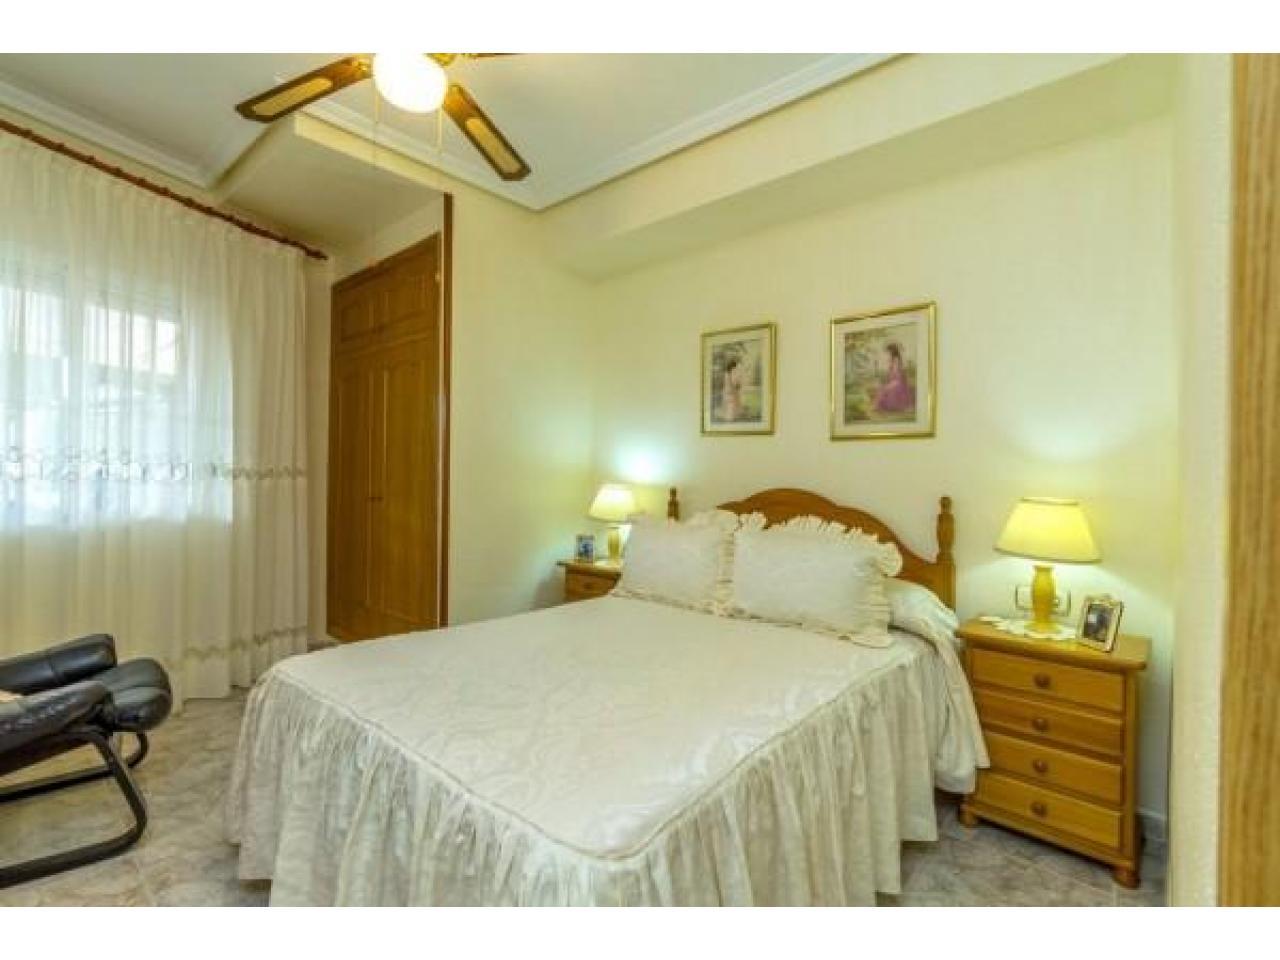 Недвижимость в Испании, Квартира рядом с морем в Ла Мата,Коста Бланка,Испания - 6